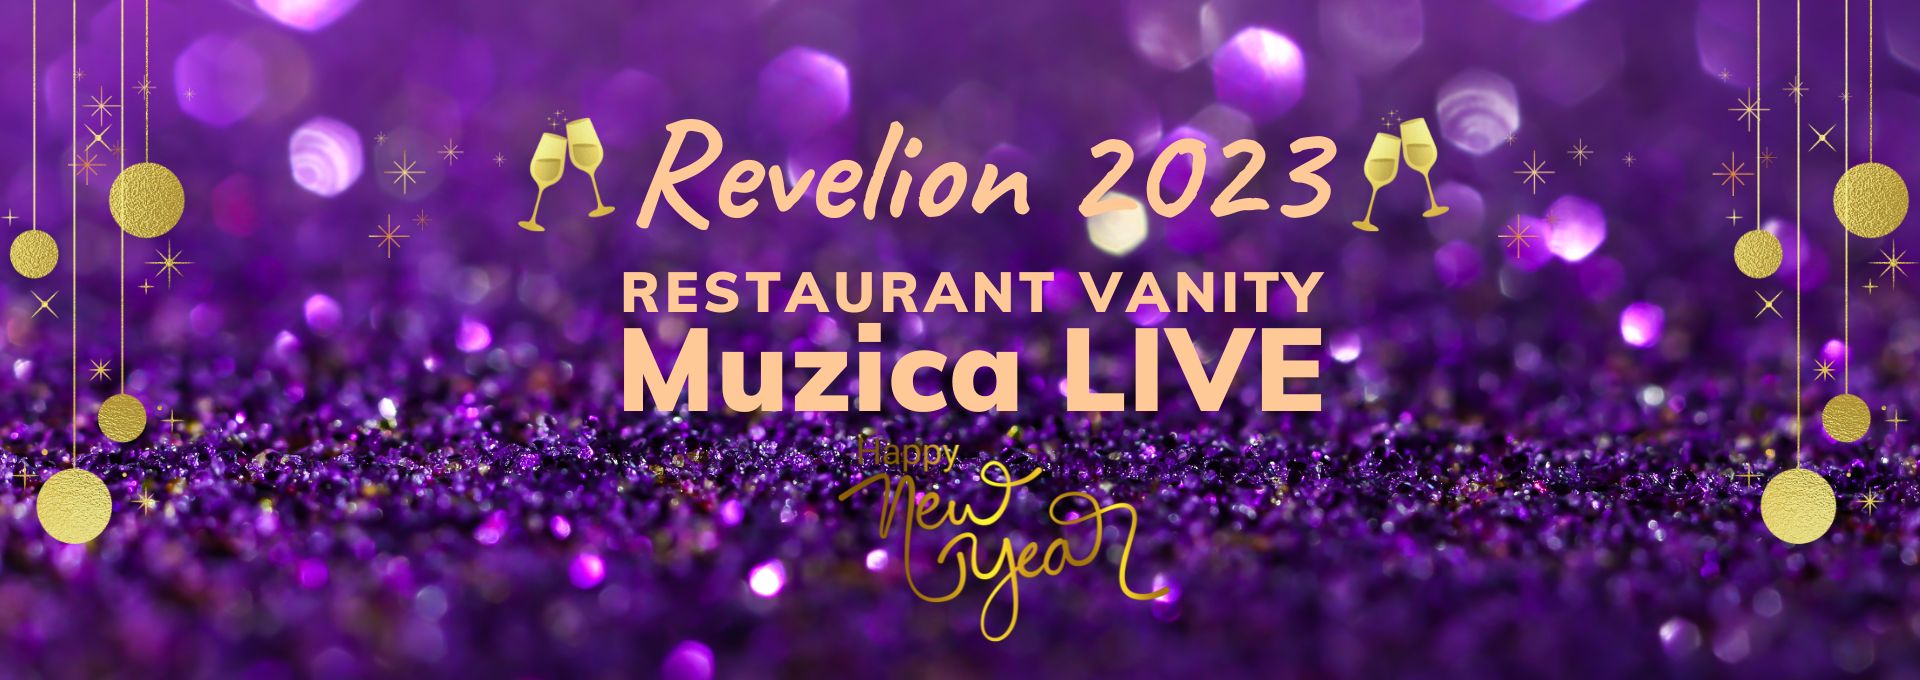 Revelion 2023 restaurant Vanity